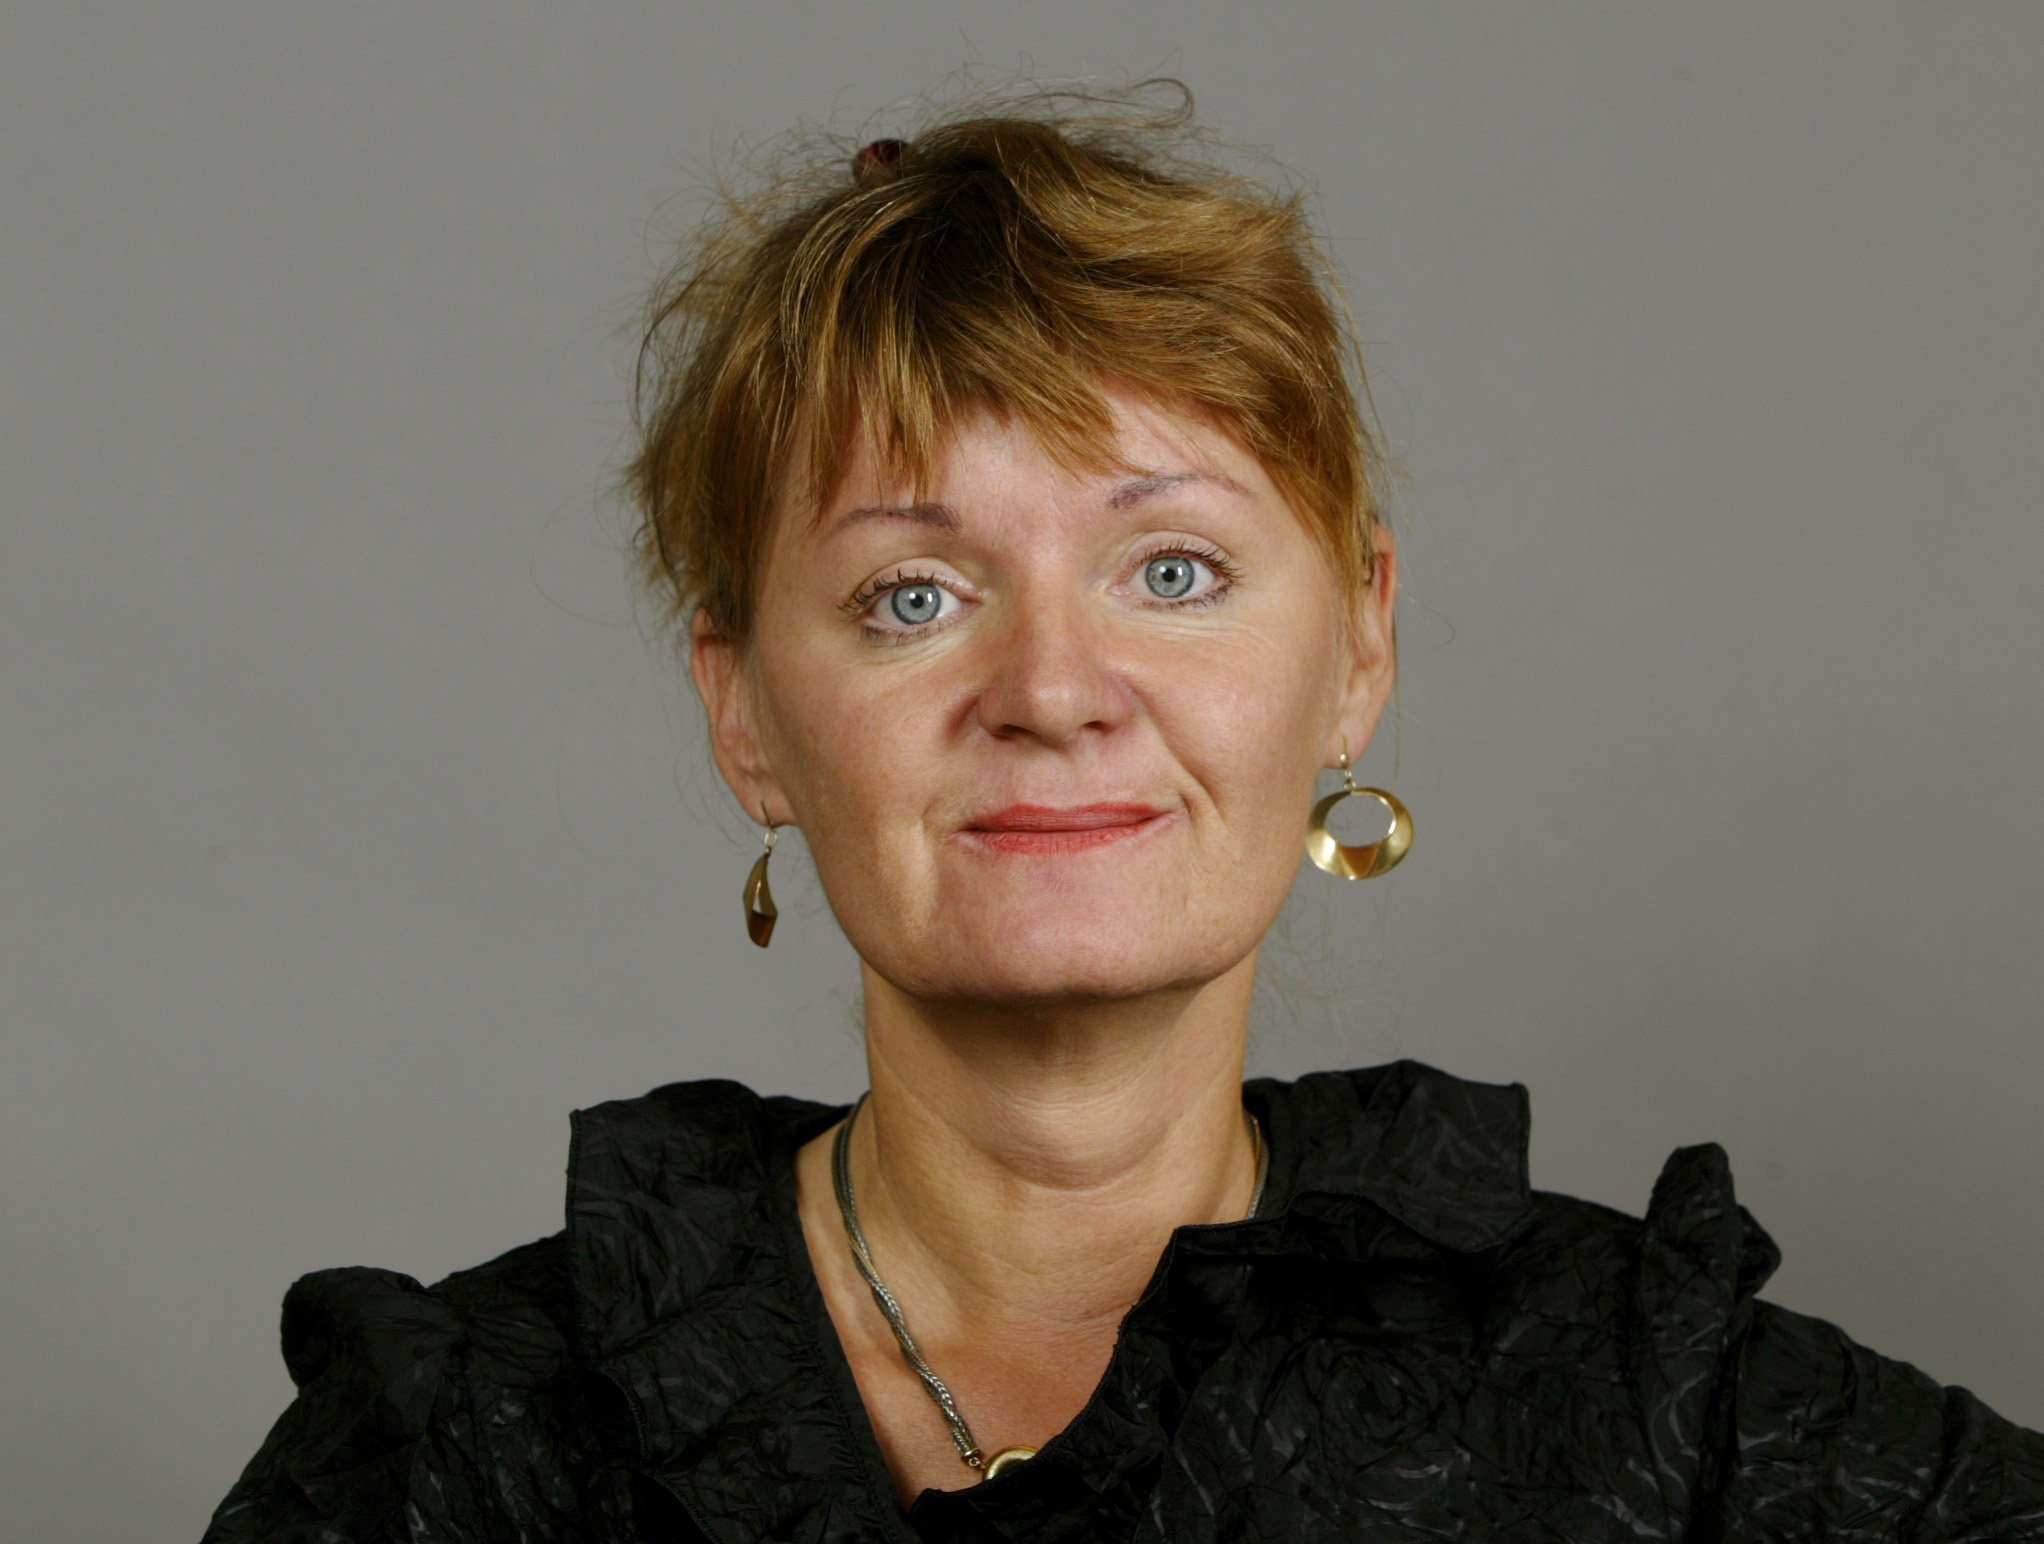 Gudrun Schyman, Feminism, Sverigedemokraterna, Carina Hägg, Alliansen, Feministiskt initiativ, Riksdagsvalet 2010